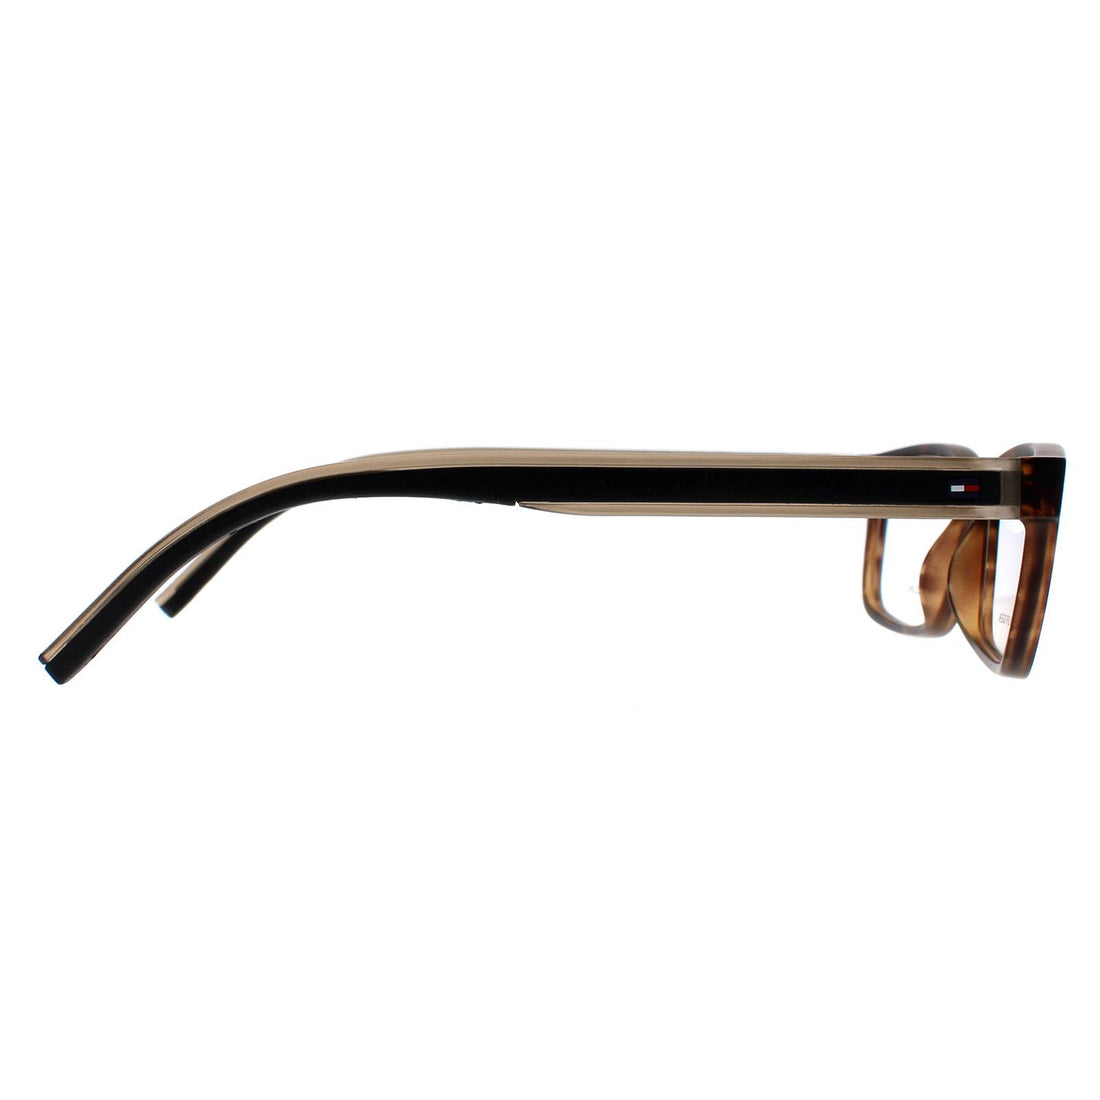 Tommy Hilfiger Glasses Frames TH 1495 G1U Olive Havana Men